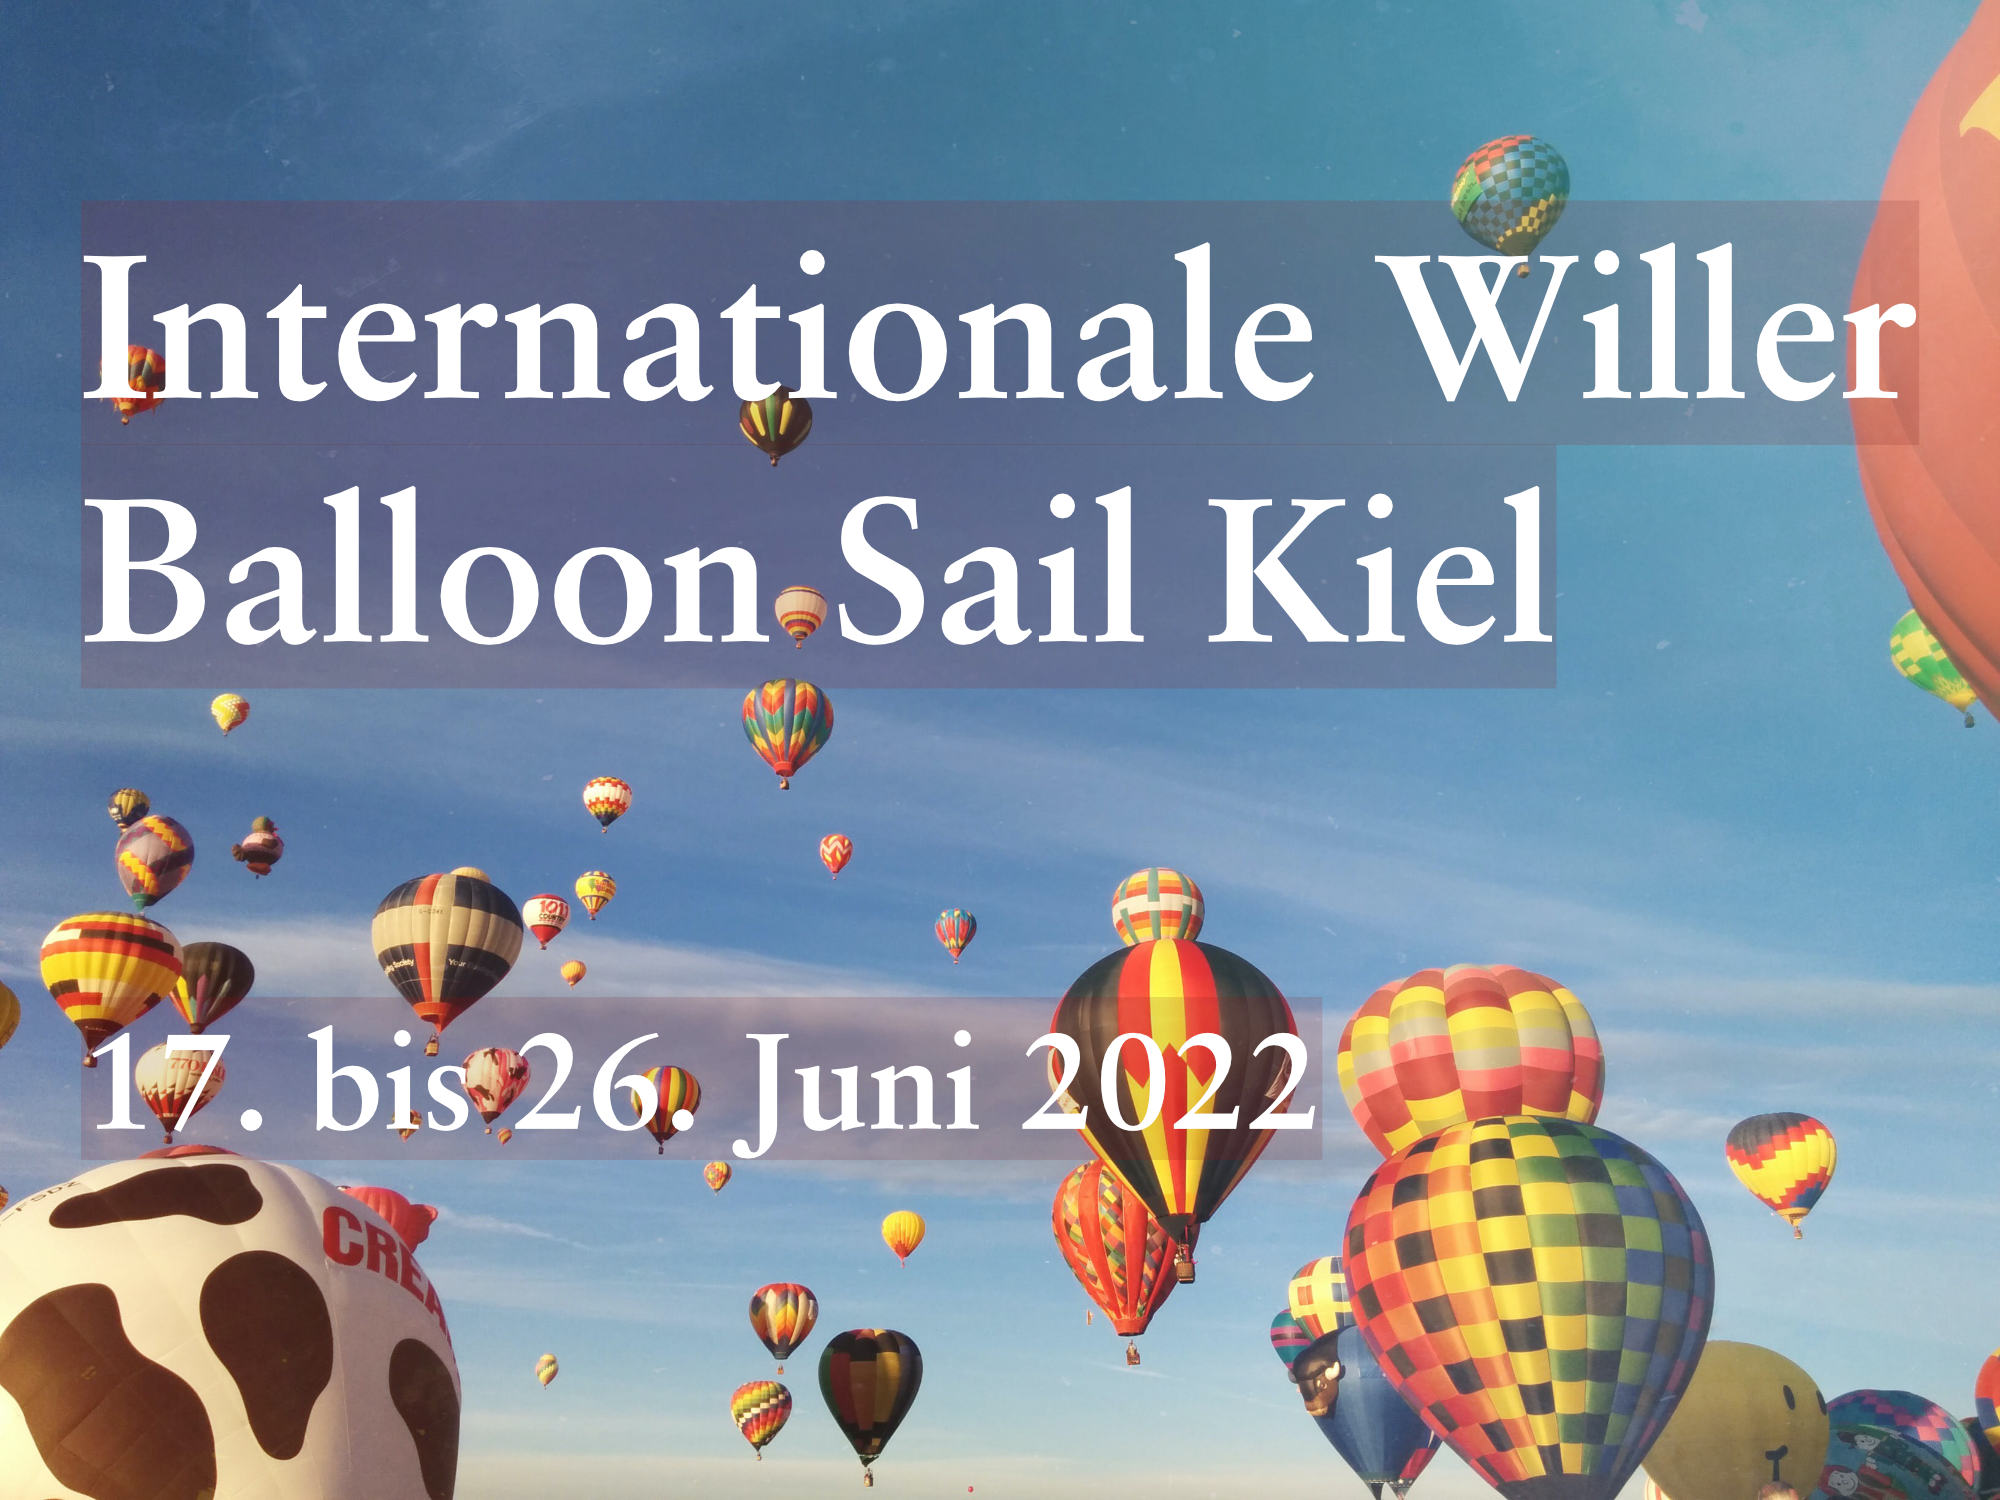 internationale Willer Balloon Sail Kiel, Veranstaltungshinweis für die Aktuellseite bei Neptunsgeschmeide. Bild Ballon über Kiel. Bild von scott webb unsplash